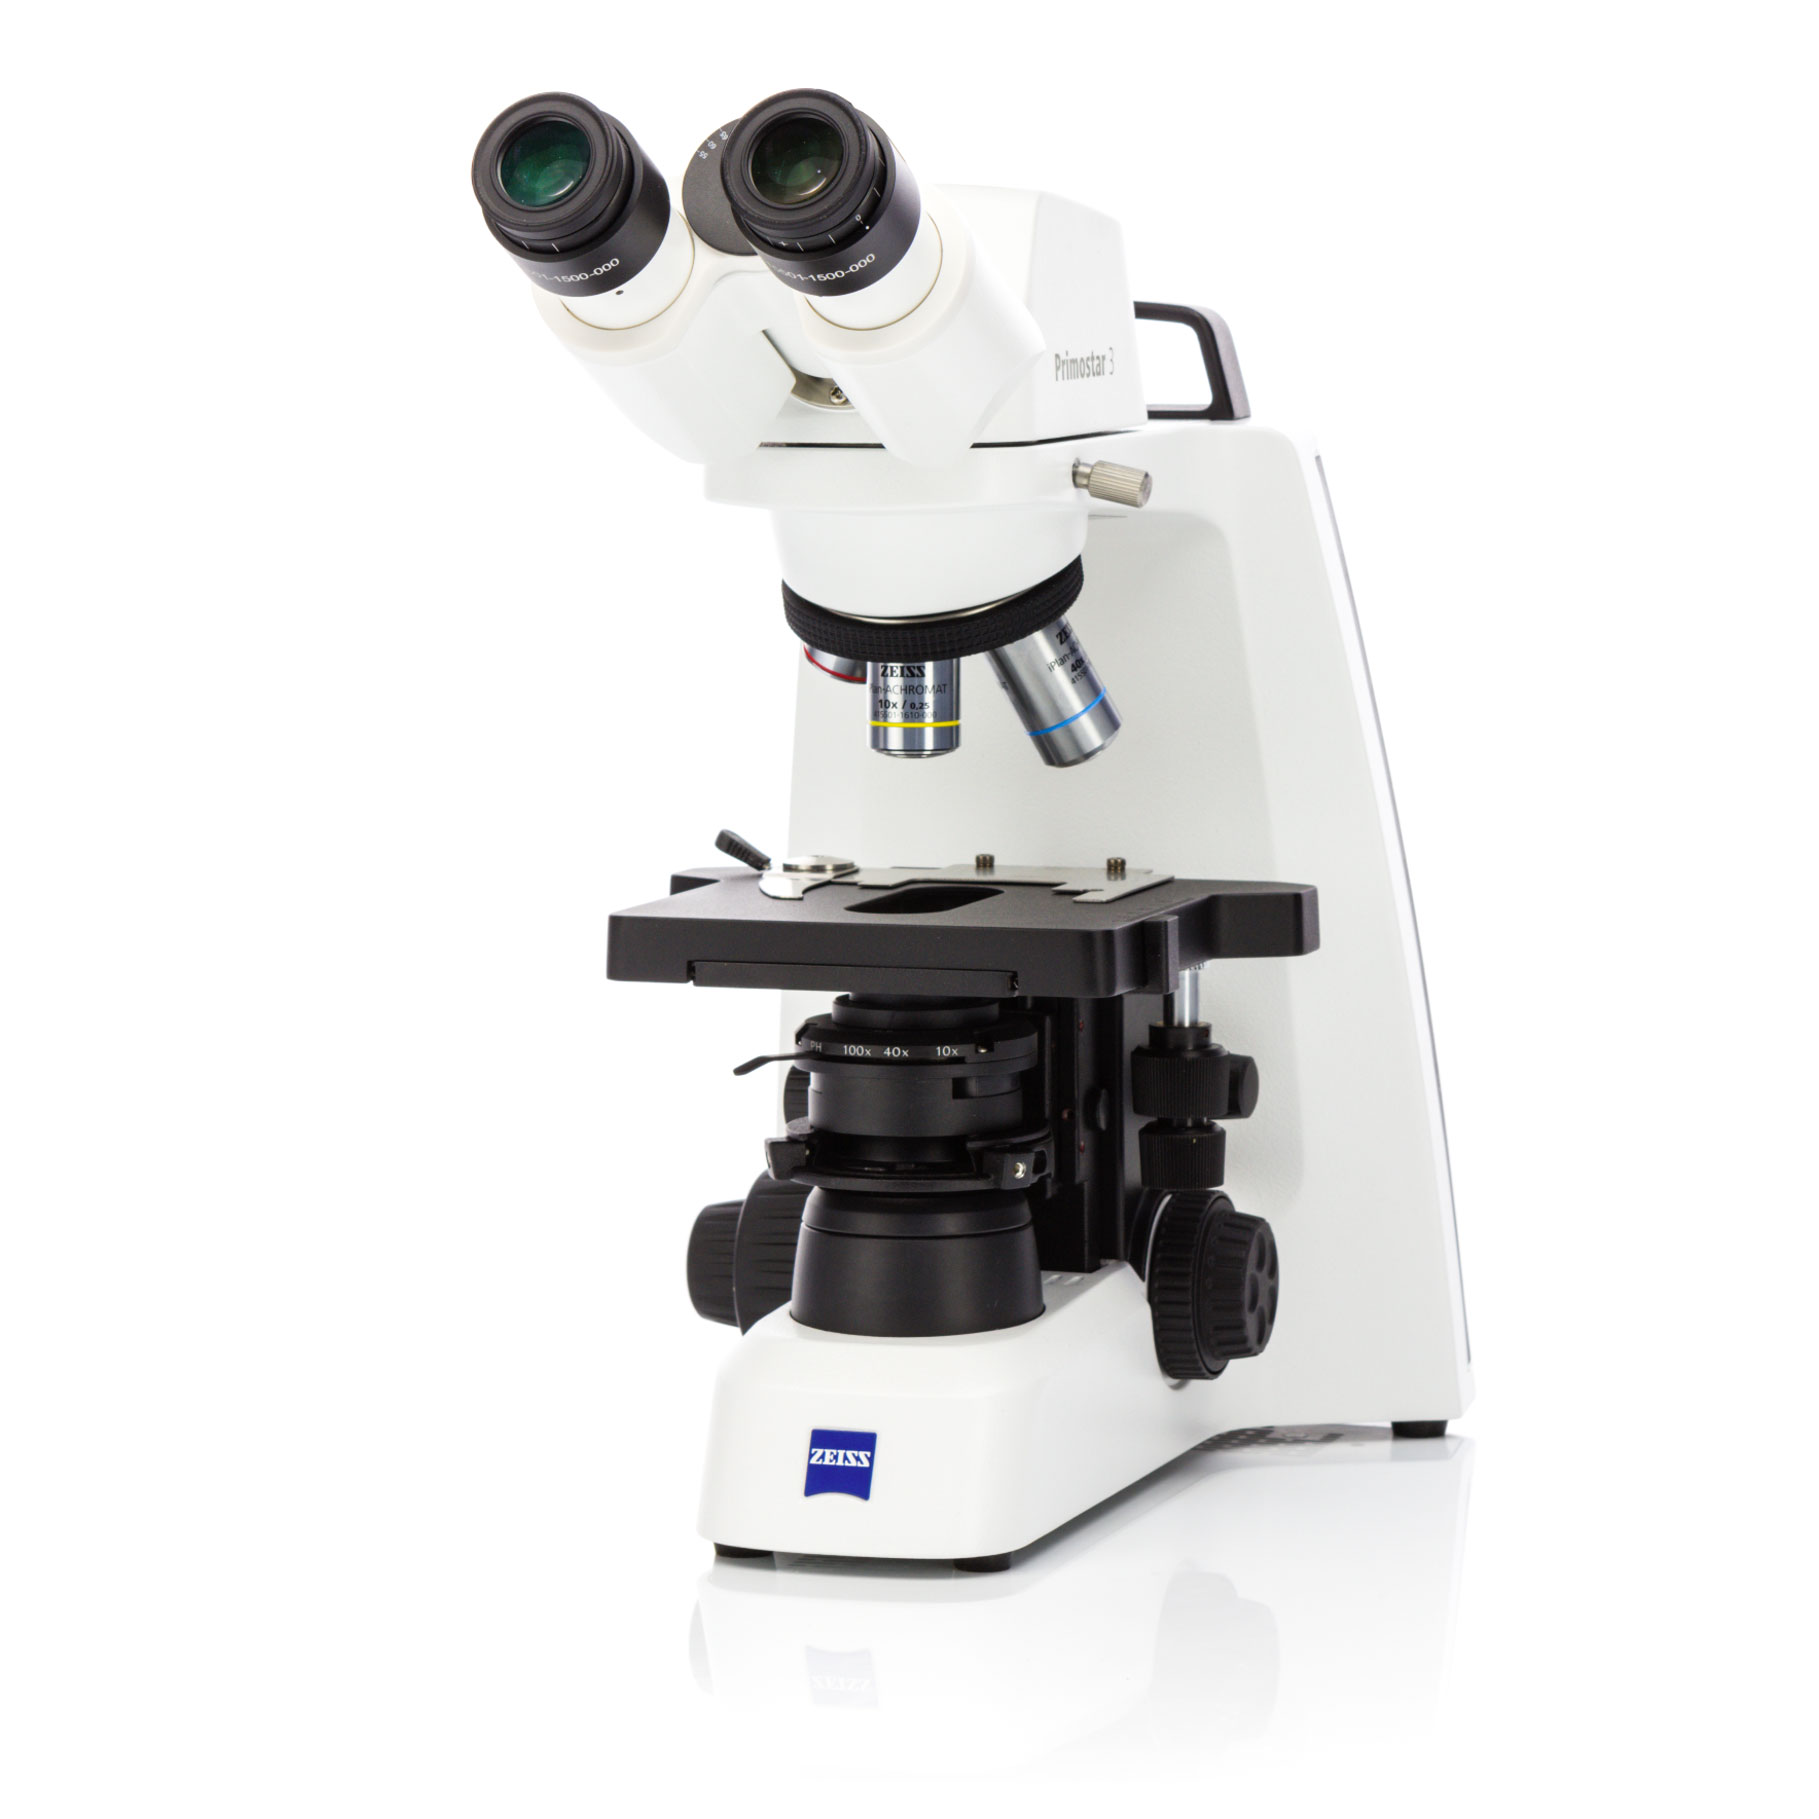 使用这款坚固耐用的紧凑型常规显微镜来推进您的教学、培训或临床实验室常规工作。